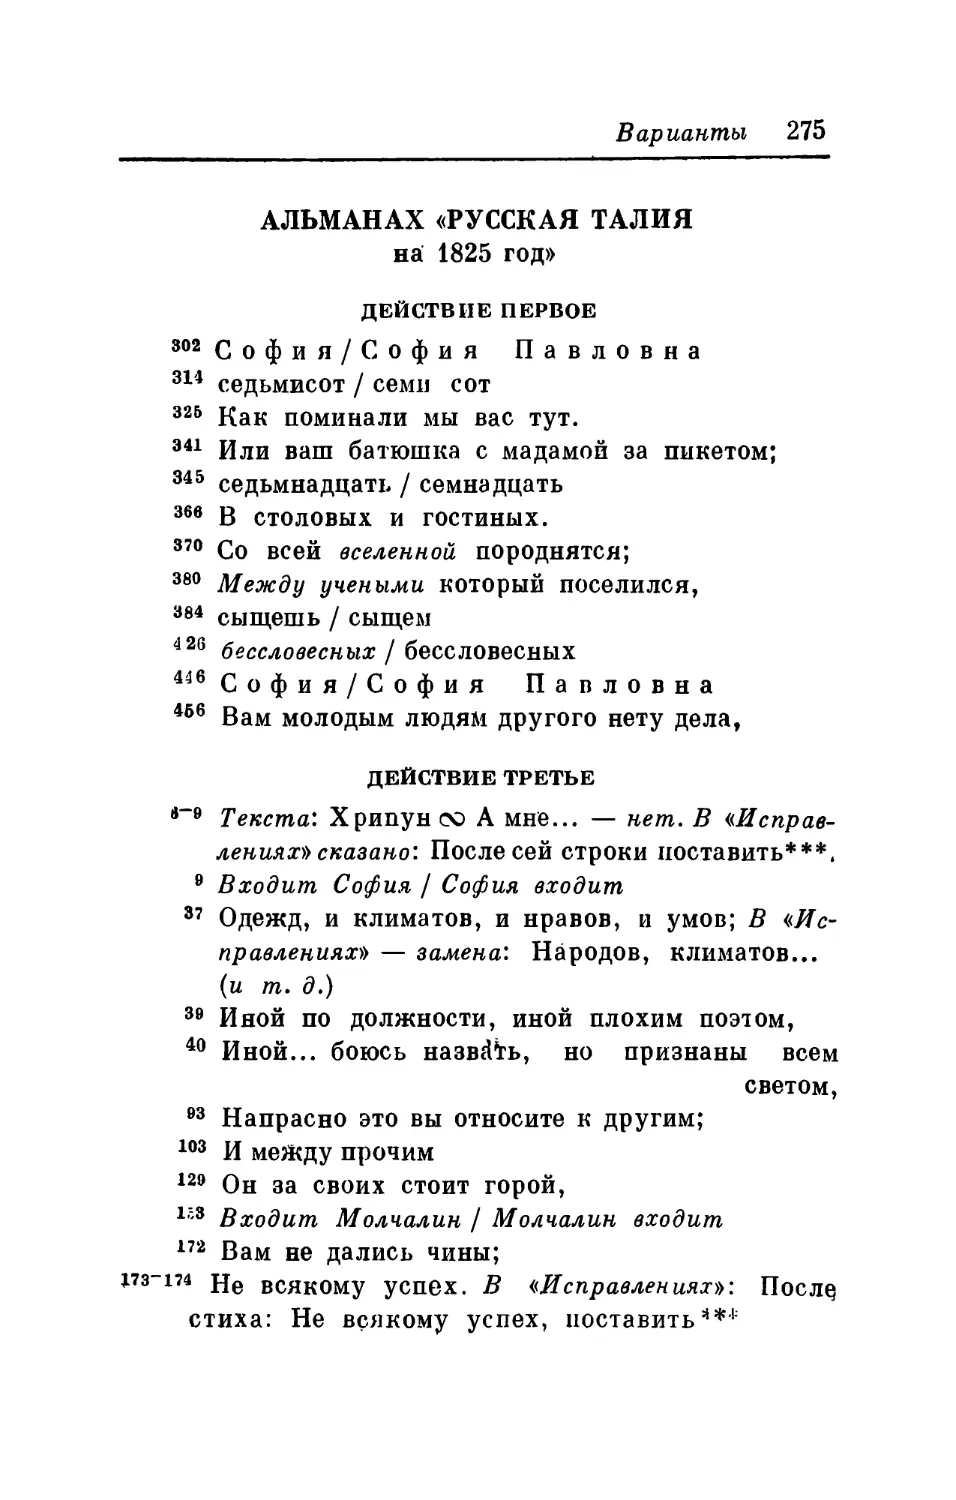 Альманах «Русская Талия на 1825 год»